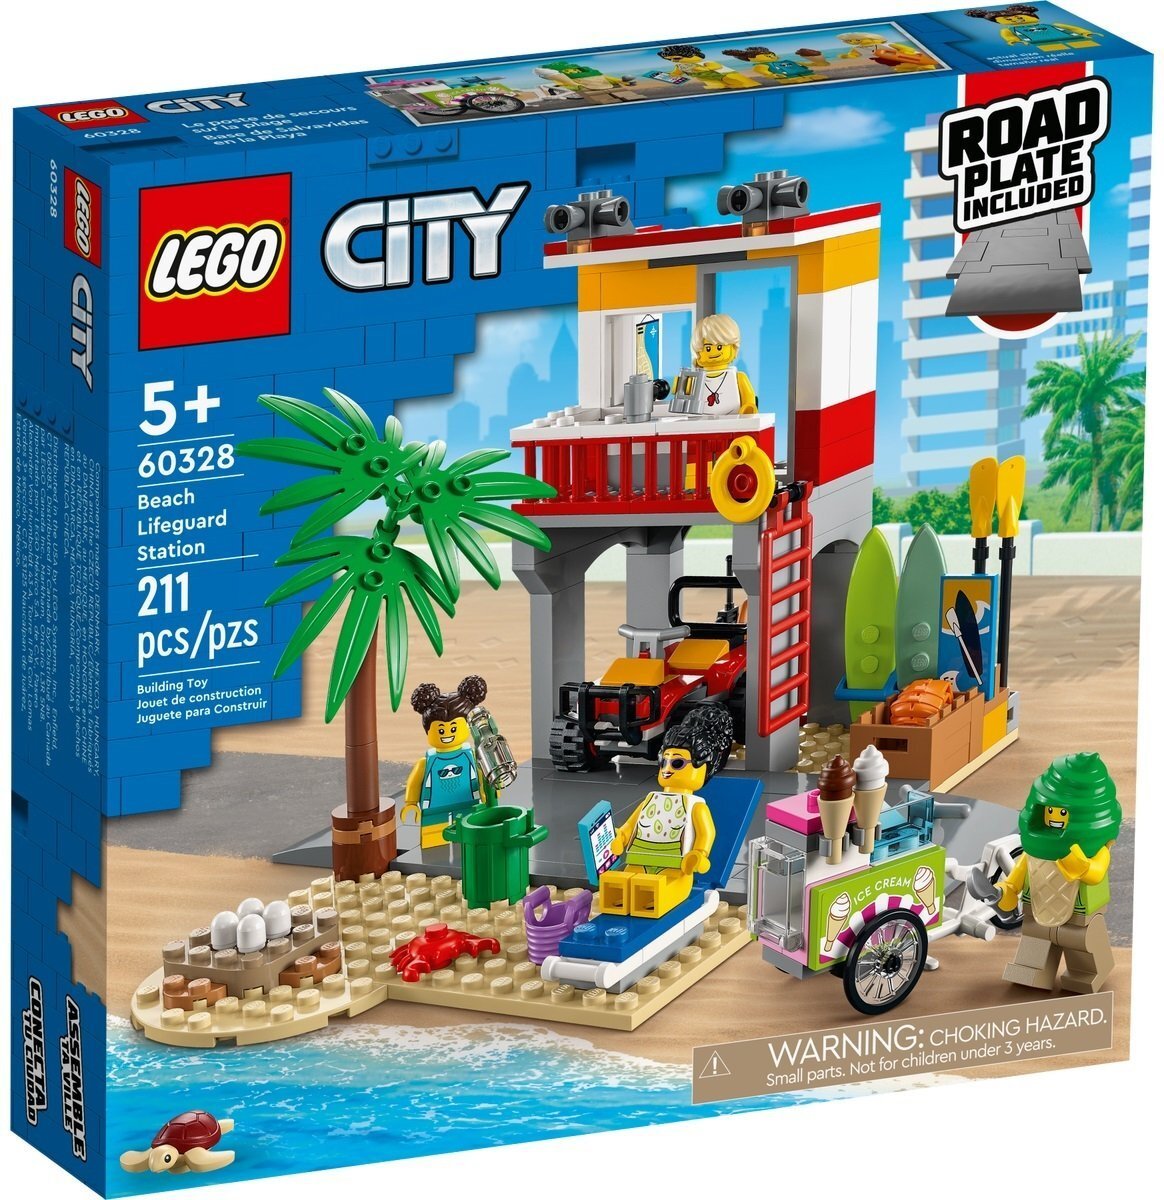 Оригинальные поделки из Лего для детей и взрослых в 2019 году